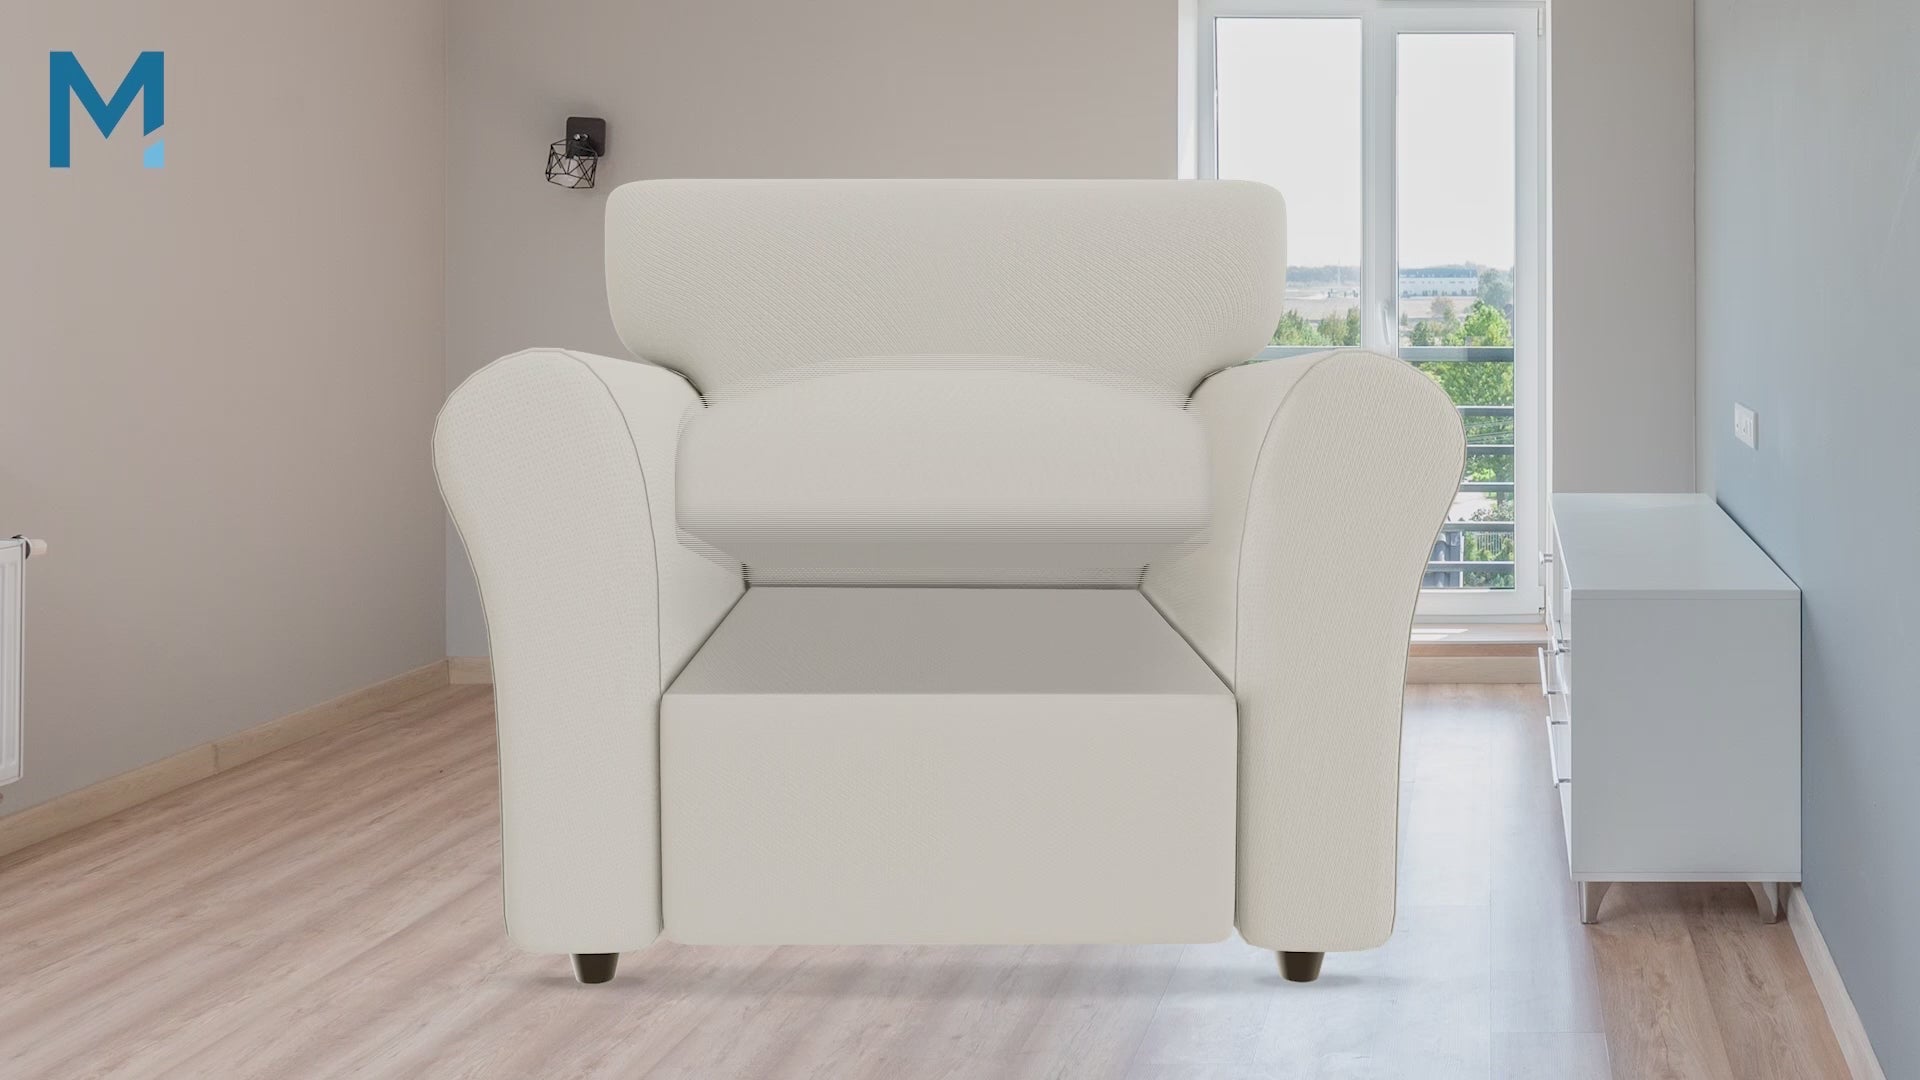 Meliusly® Sagging Chair Cushion Support - Recliner Chair Cushion